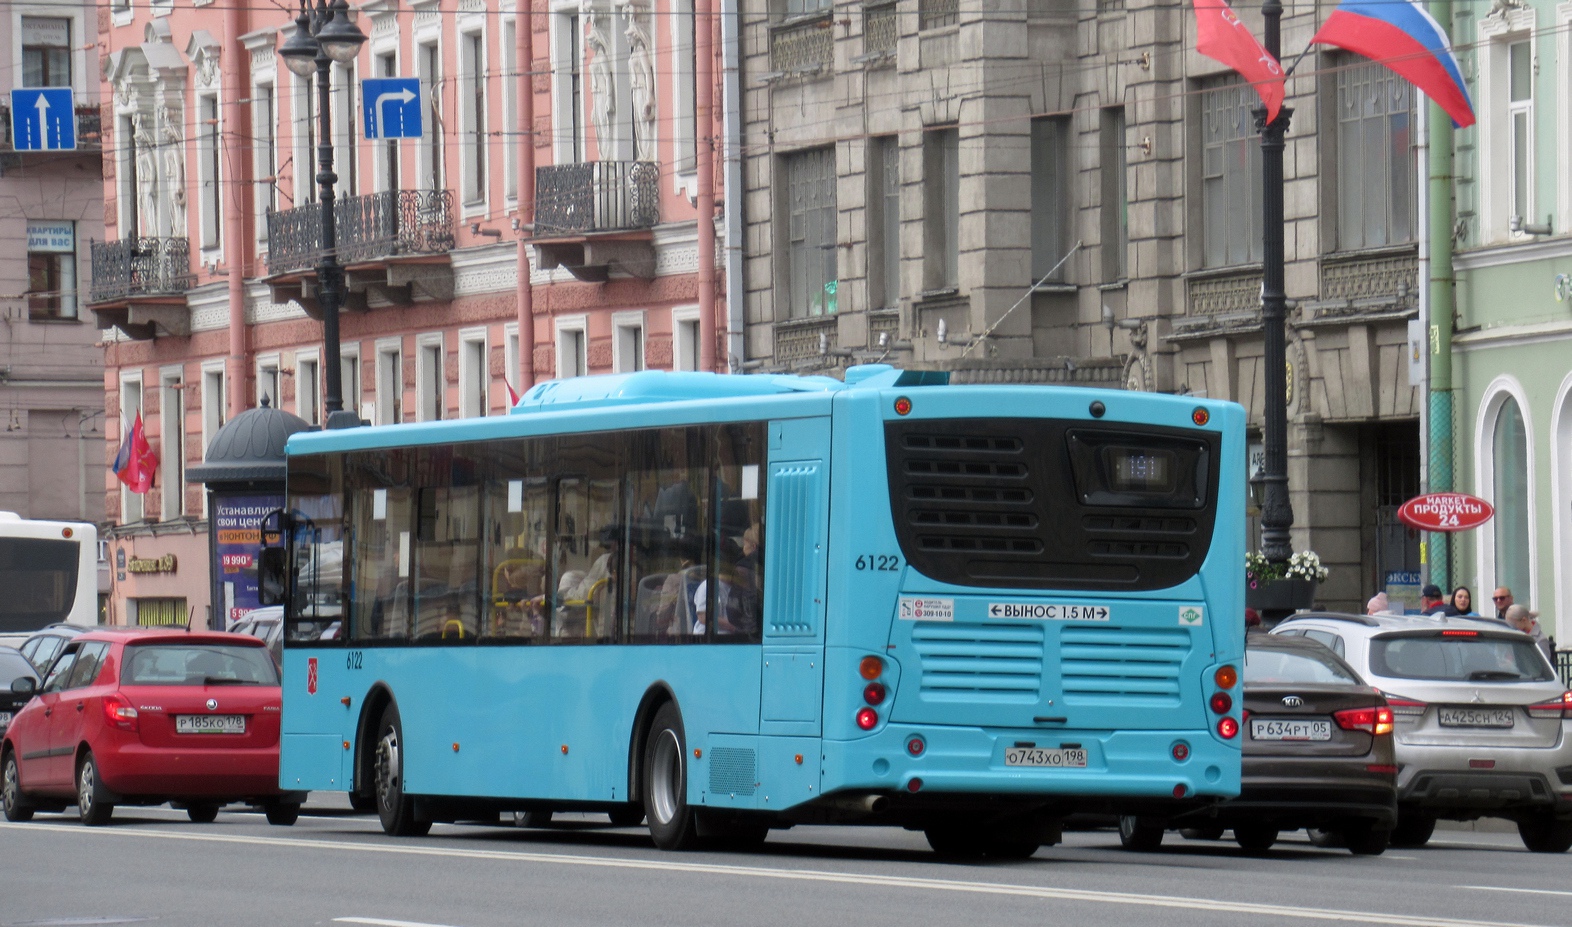 Szentpétervár, Volgabus-5270.G2 (LNG) sz.: 6122